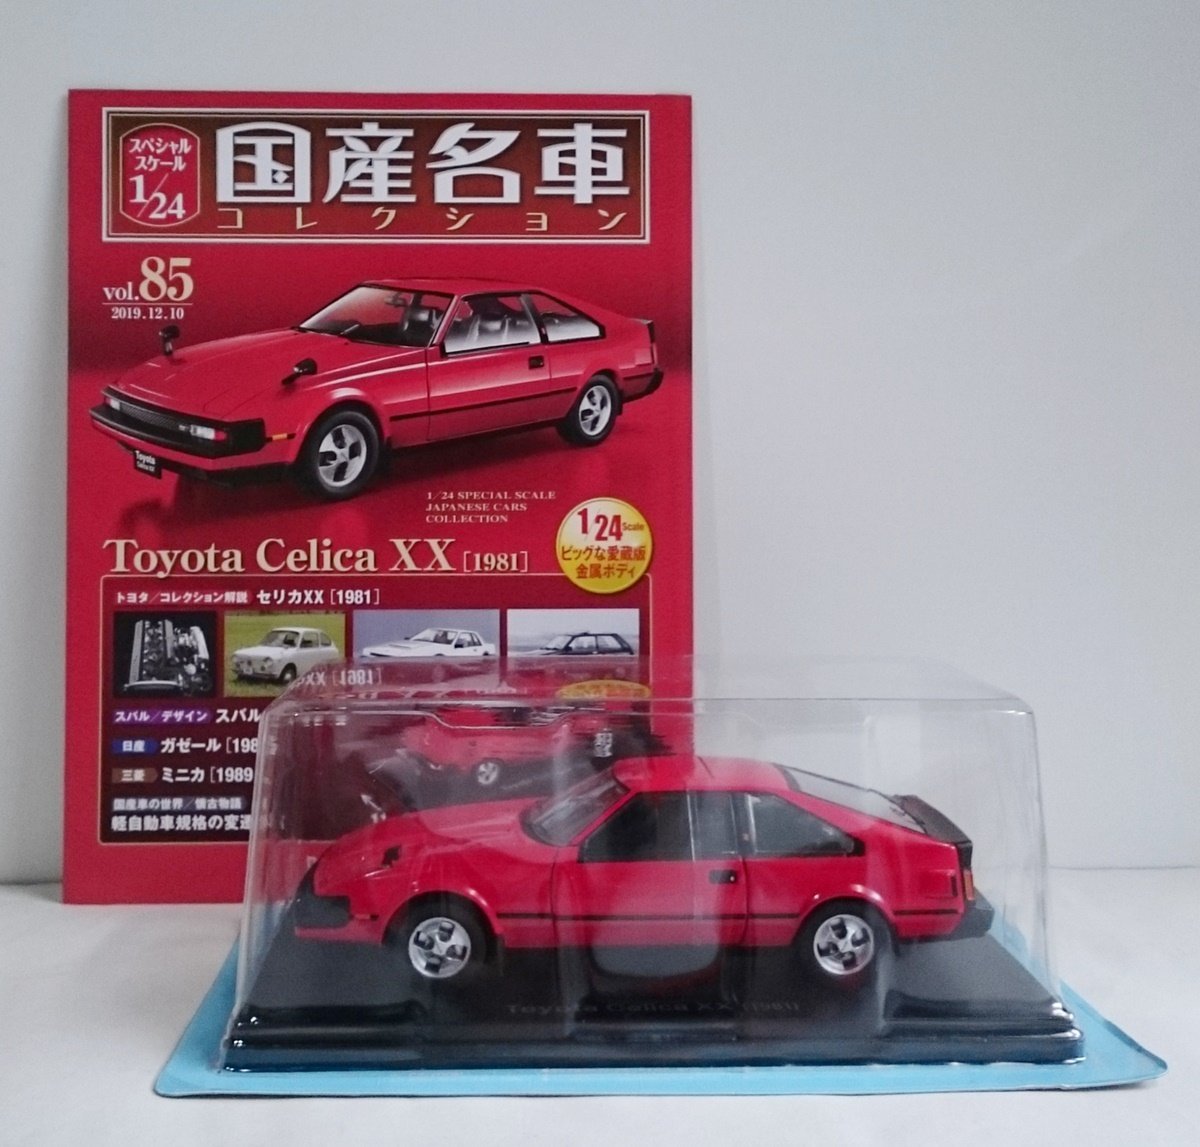 [W3414] 国産名車コレクション Vol.85 (2019.12.10号) Toyota Celica XX [1981] / 未開封 アシェット トヨタ セリカ ミニカー_画像1